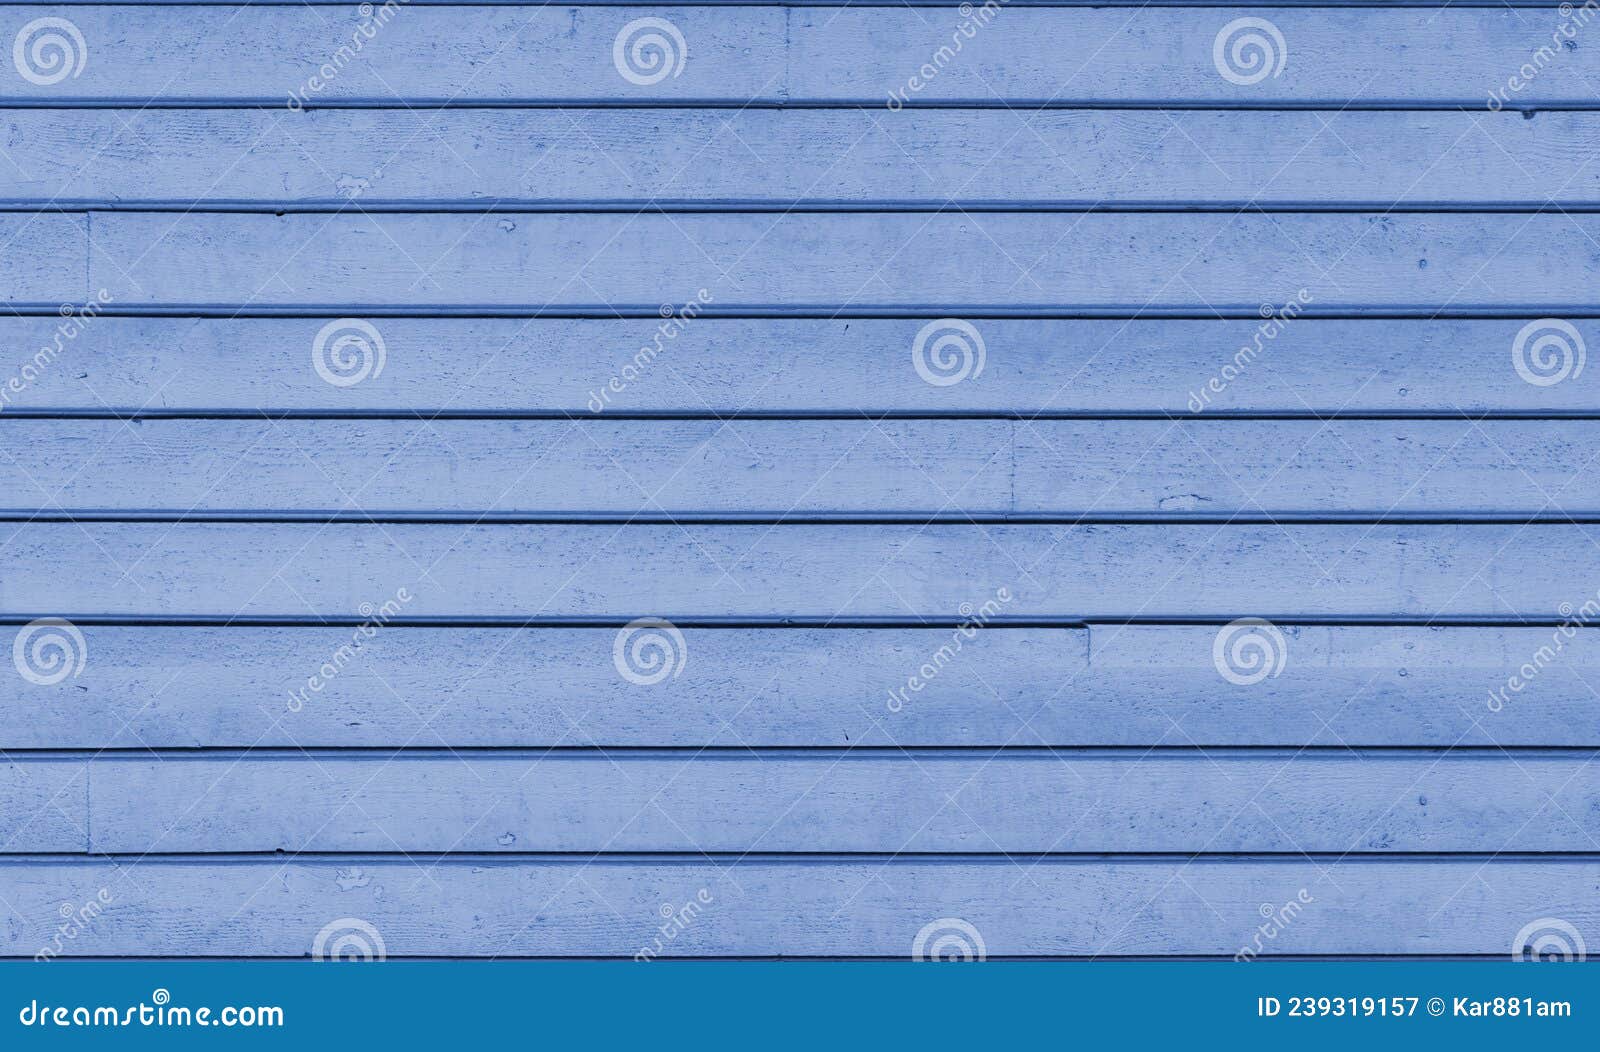 ÃÂ¢exture horizontal blue wooden boards